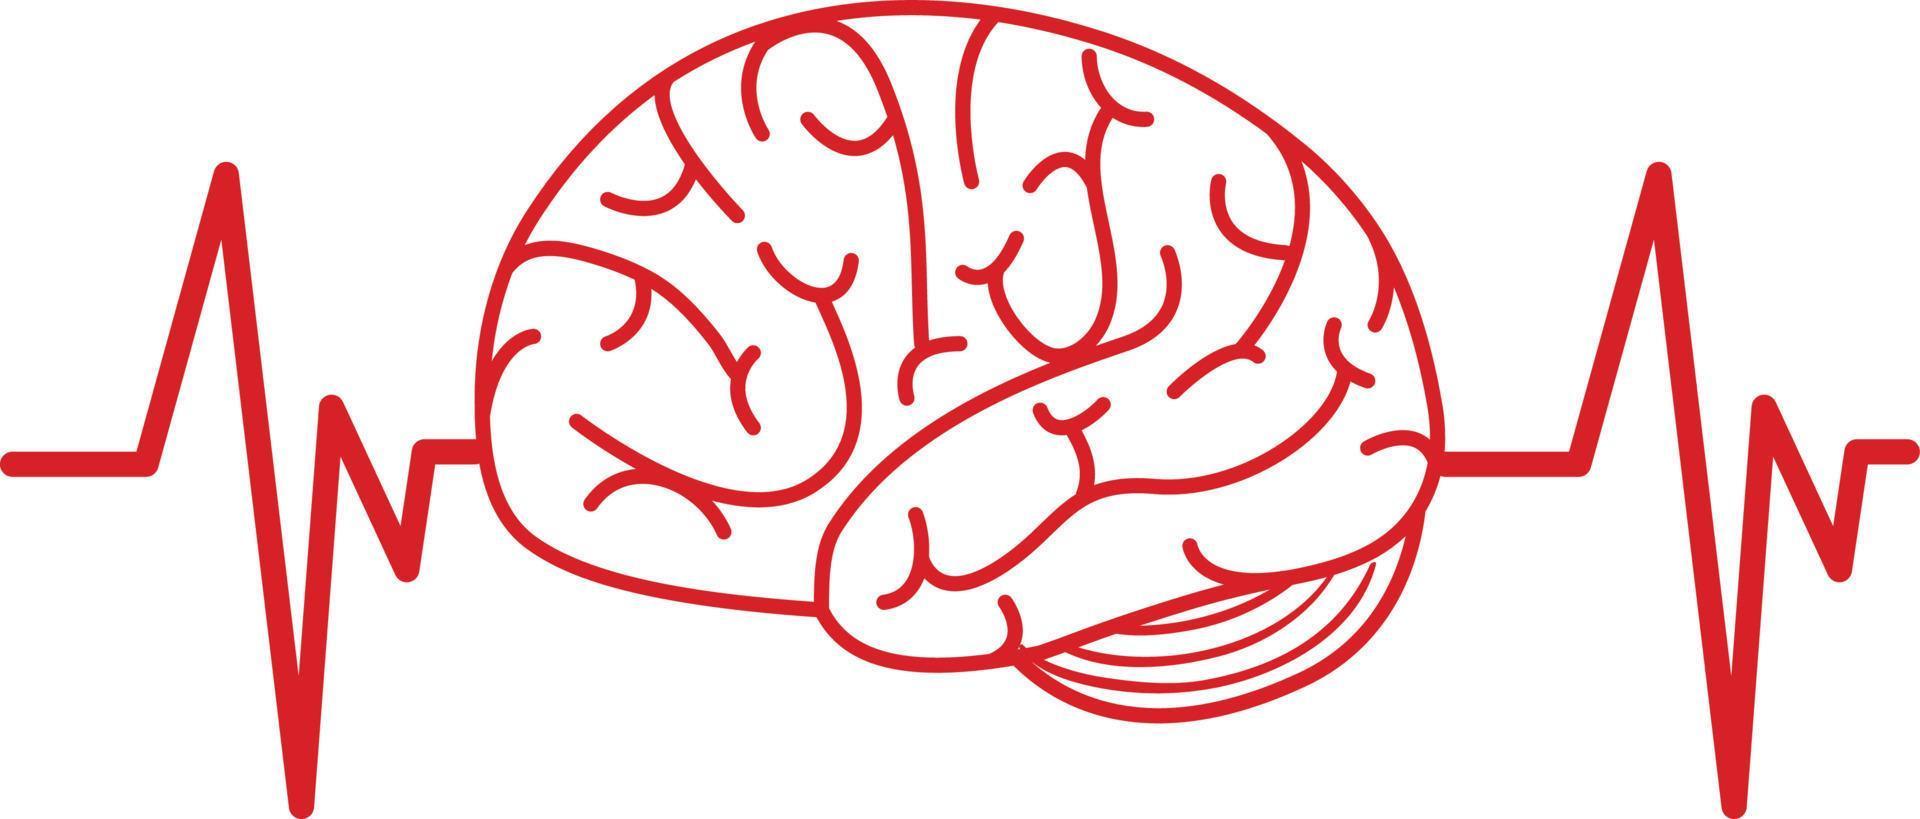 hjärnan har en röd signal på vit bakgrund vektor